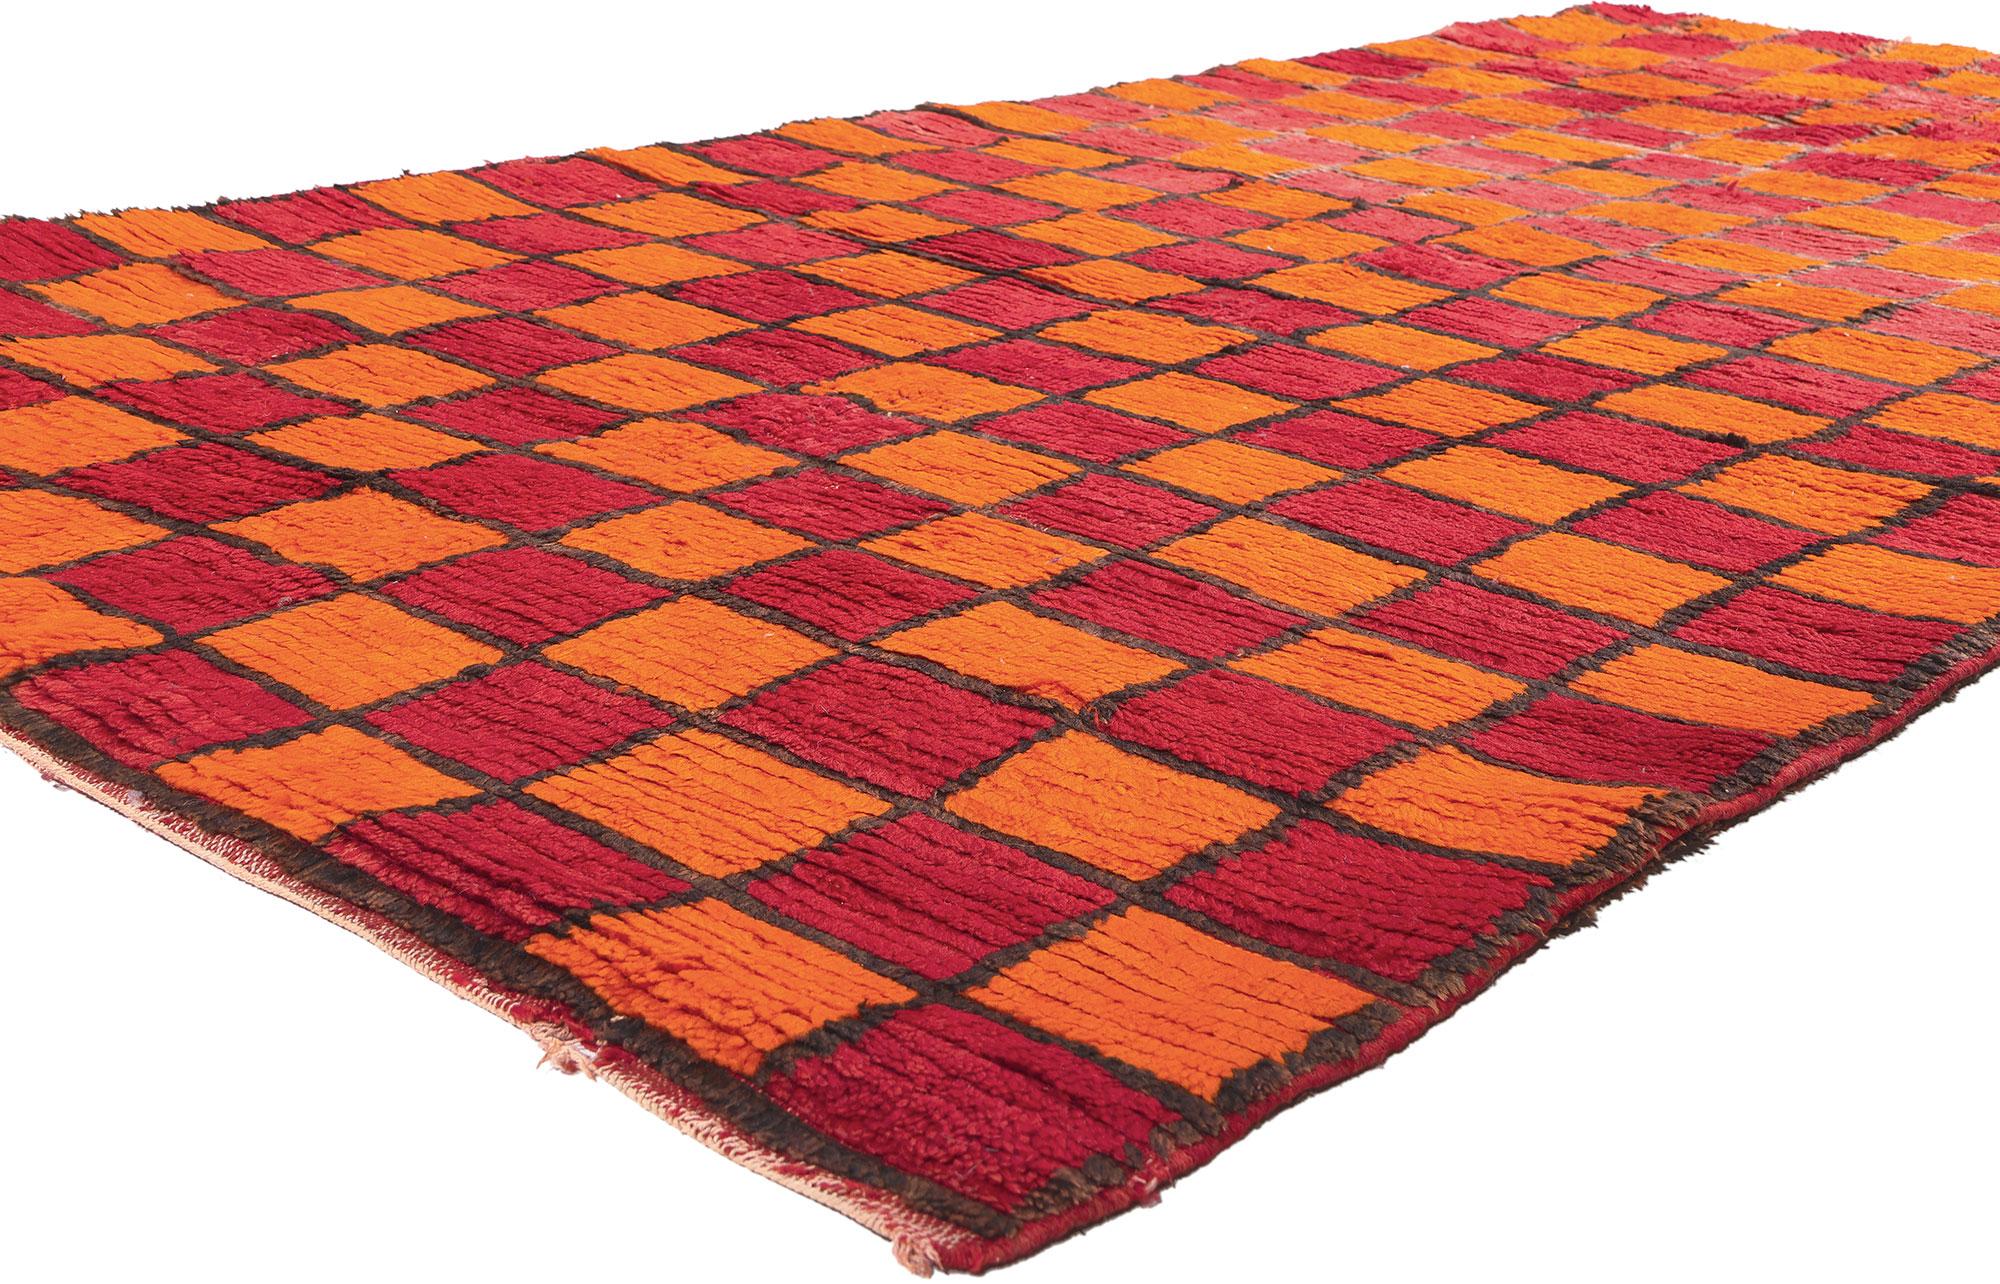 20532 Marokkanischer Wendeteppich Vintage, 05'02 x 09'11.
Treten Sie ein in die fesselnde Vision gewebter Schönheit mit diesem handgeknüpften marokkanischen Berberteppich aus Wolle im Vintage-Stil, einem Zeugnis rauer Schönheit, Schlichtheit und